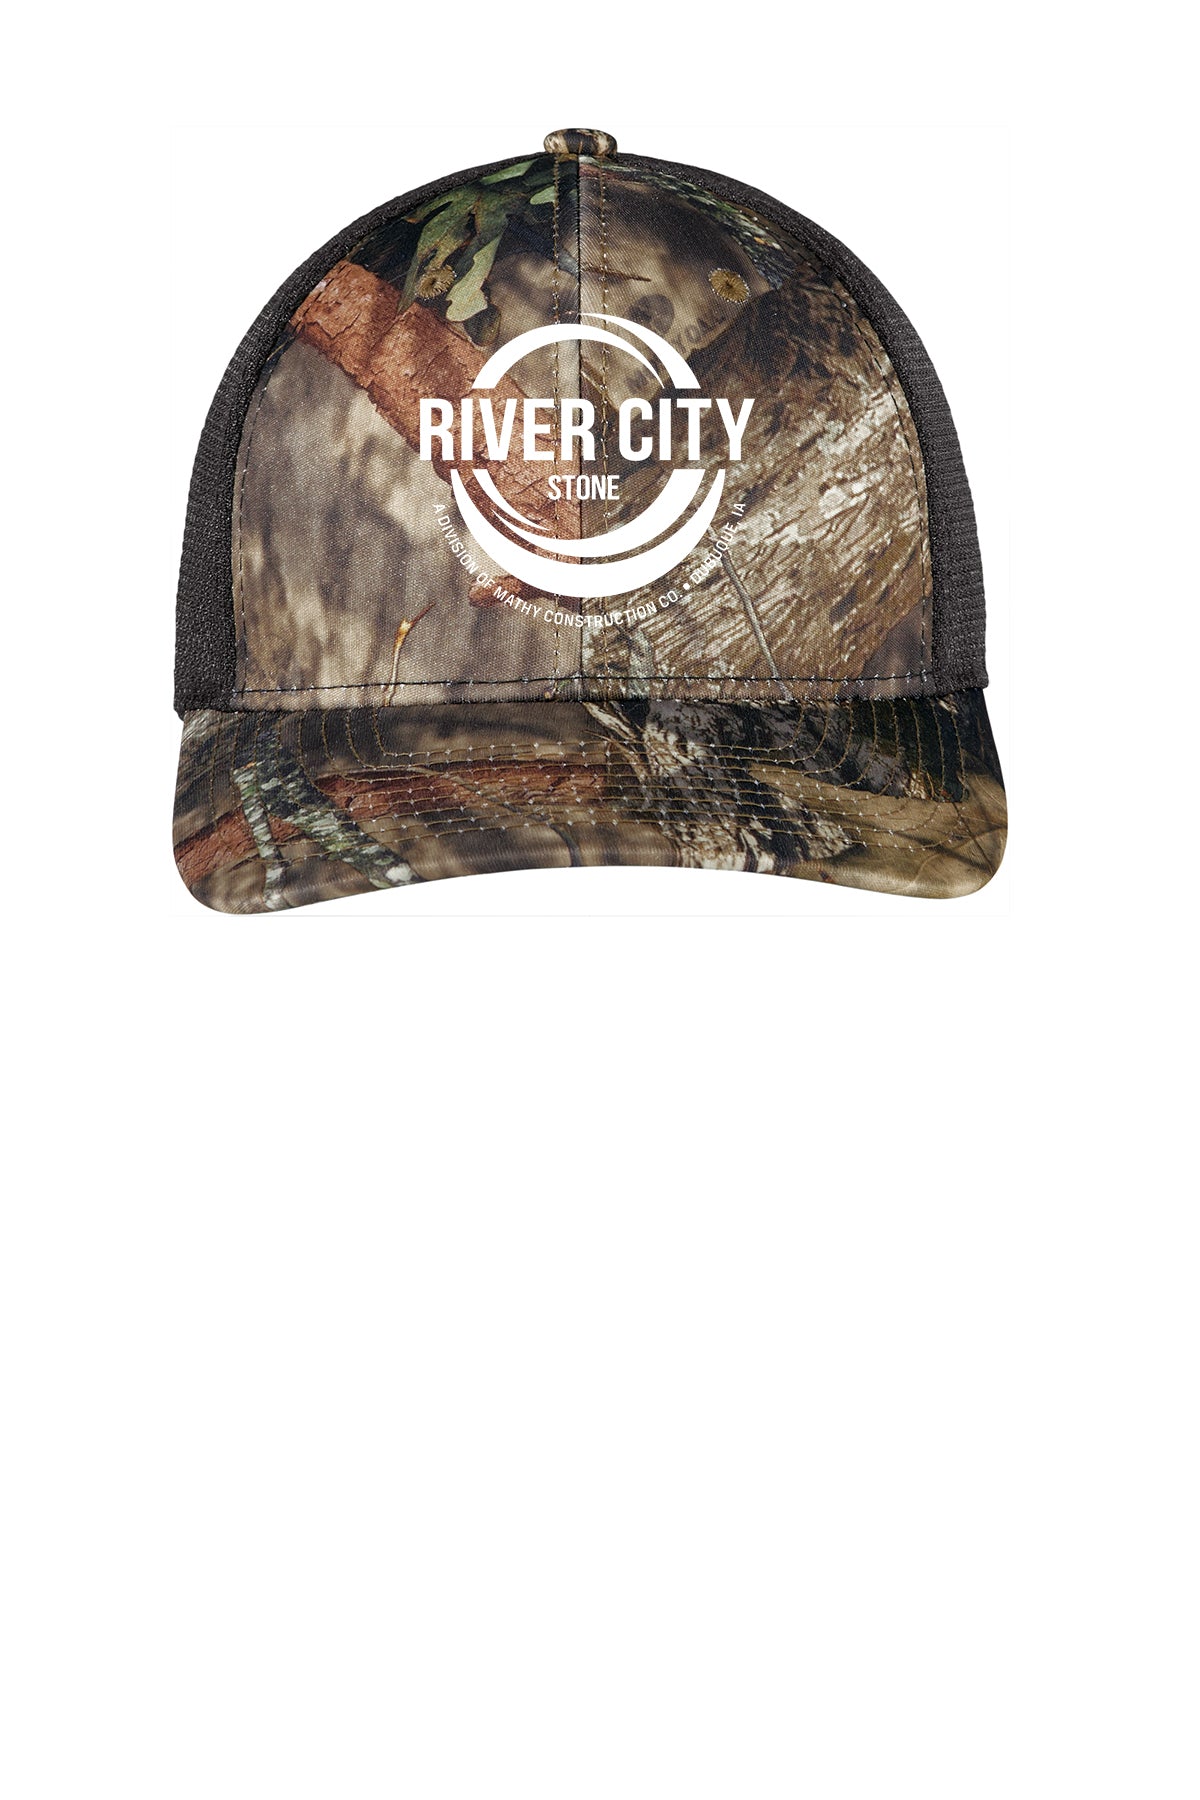 River City Stone Limited Edition Camo Trucker Cap